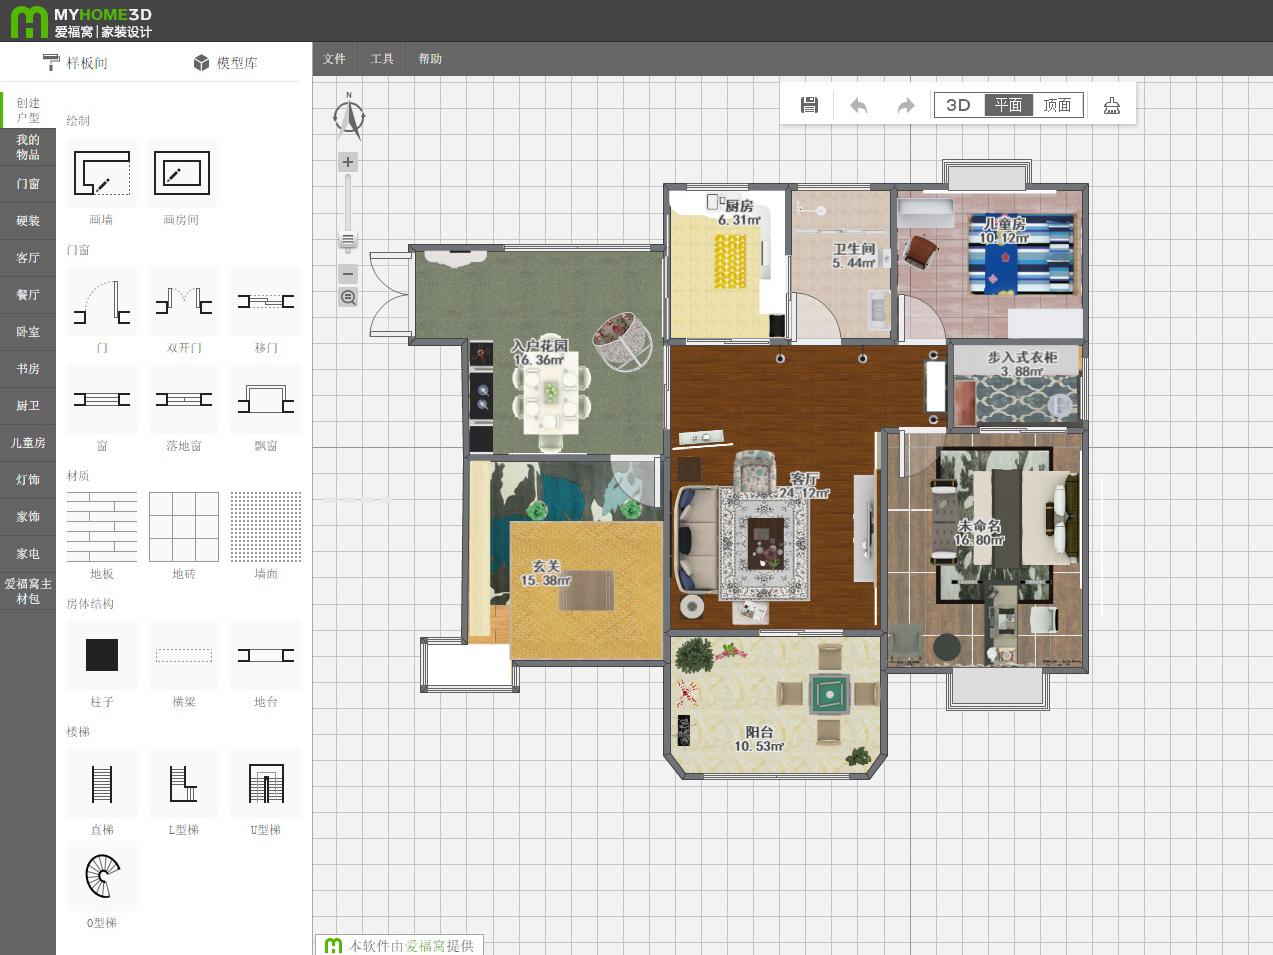 亿图图示专家:一款简单好用的建筑平面图设计软件!